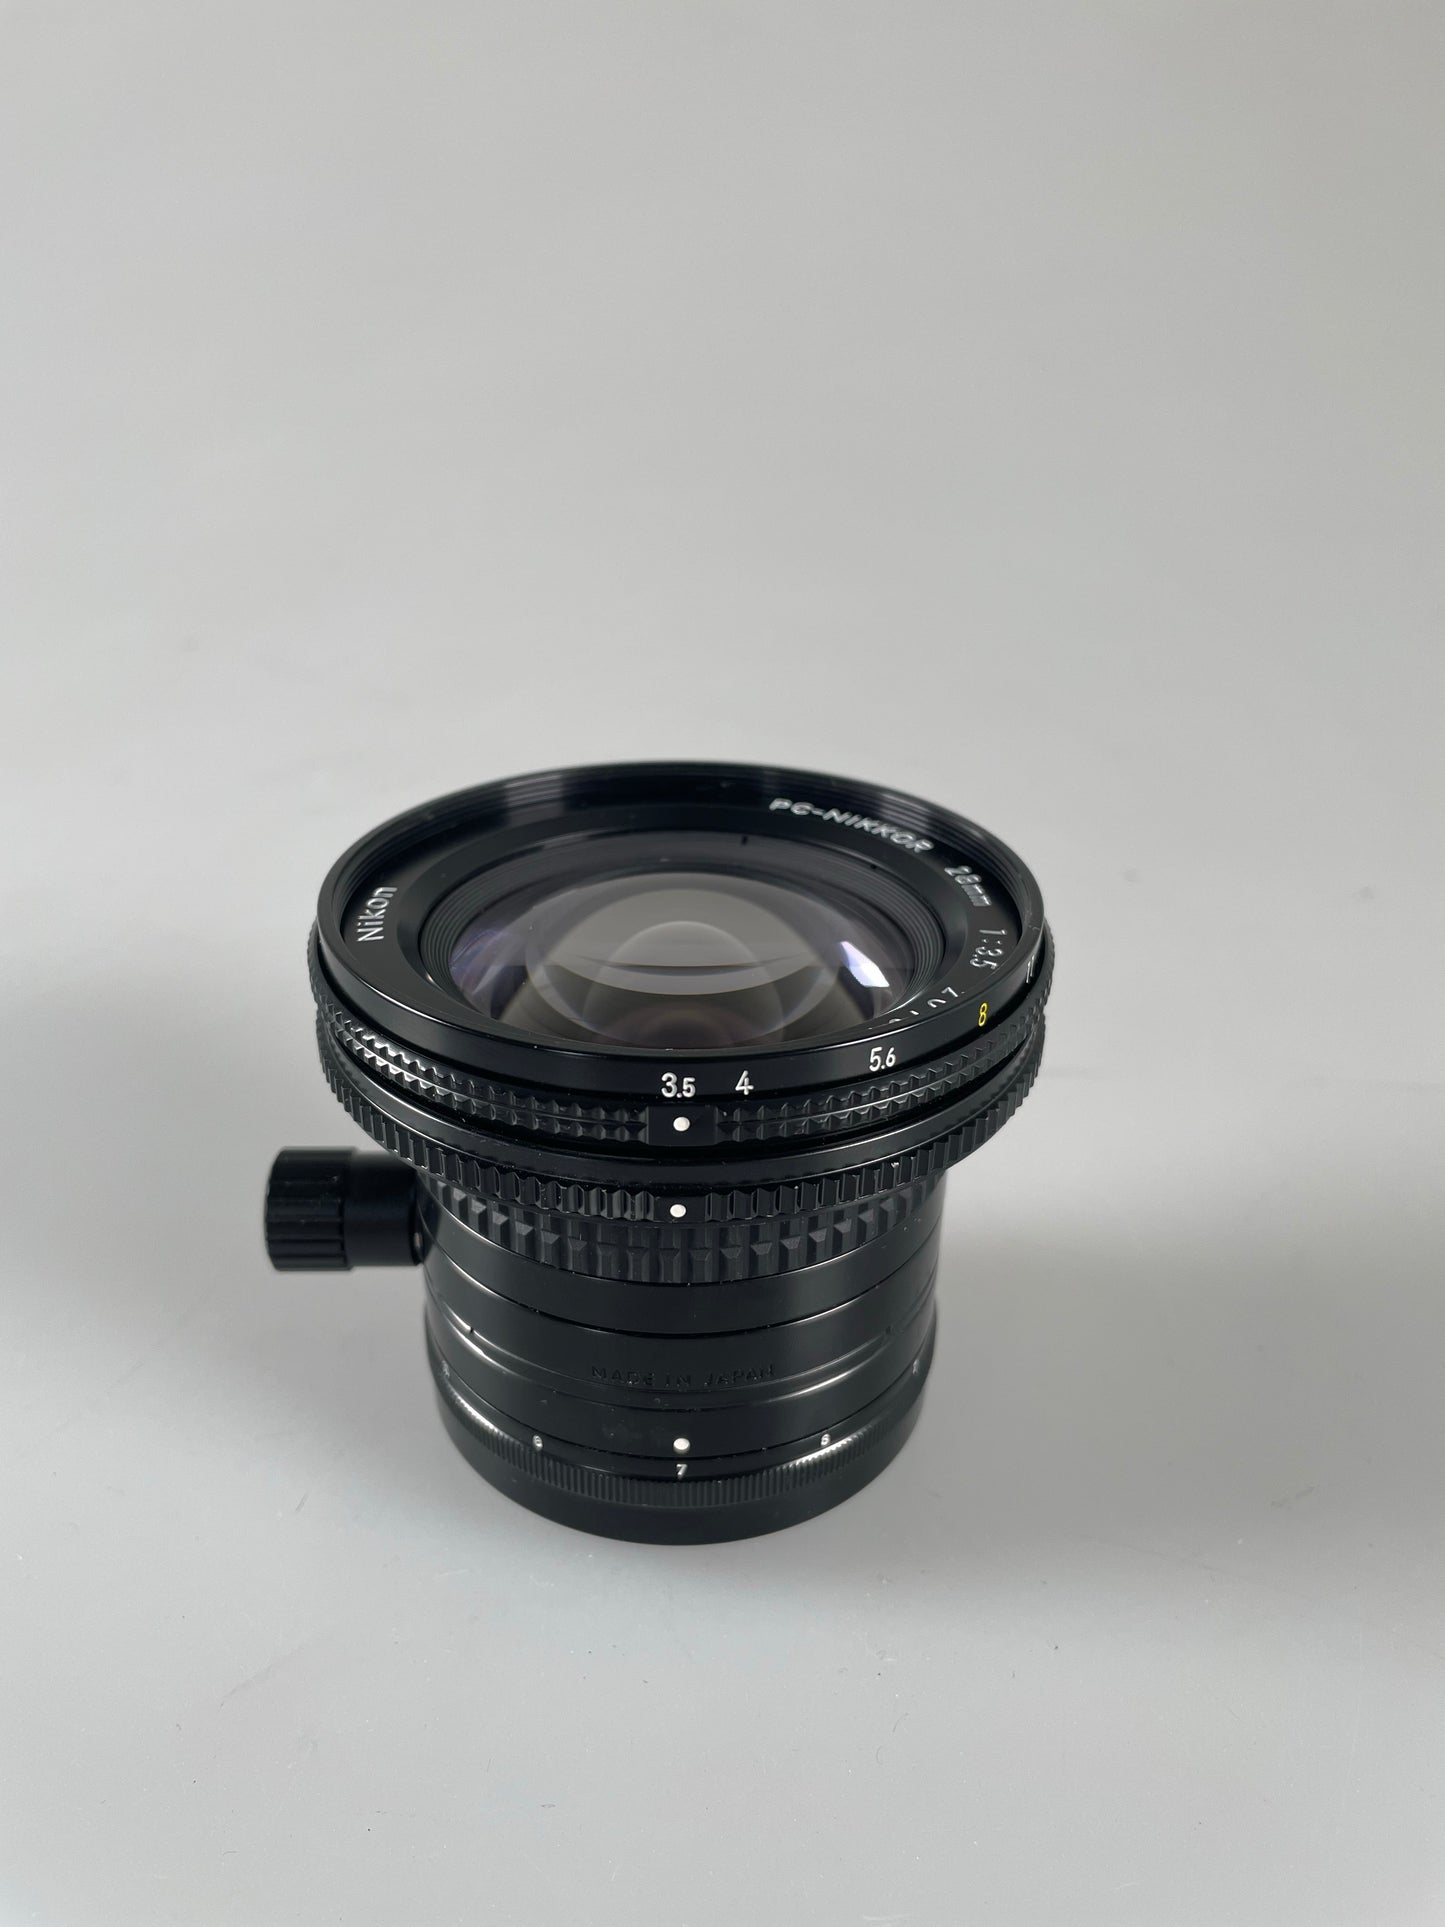 Nikon 28mm f3.5 PC Nikkor Manual Focus Lens